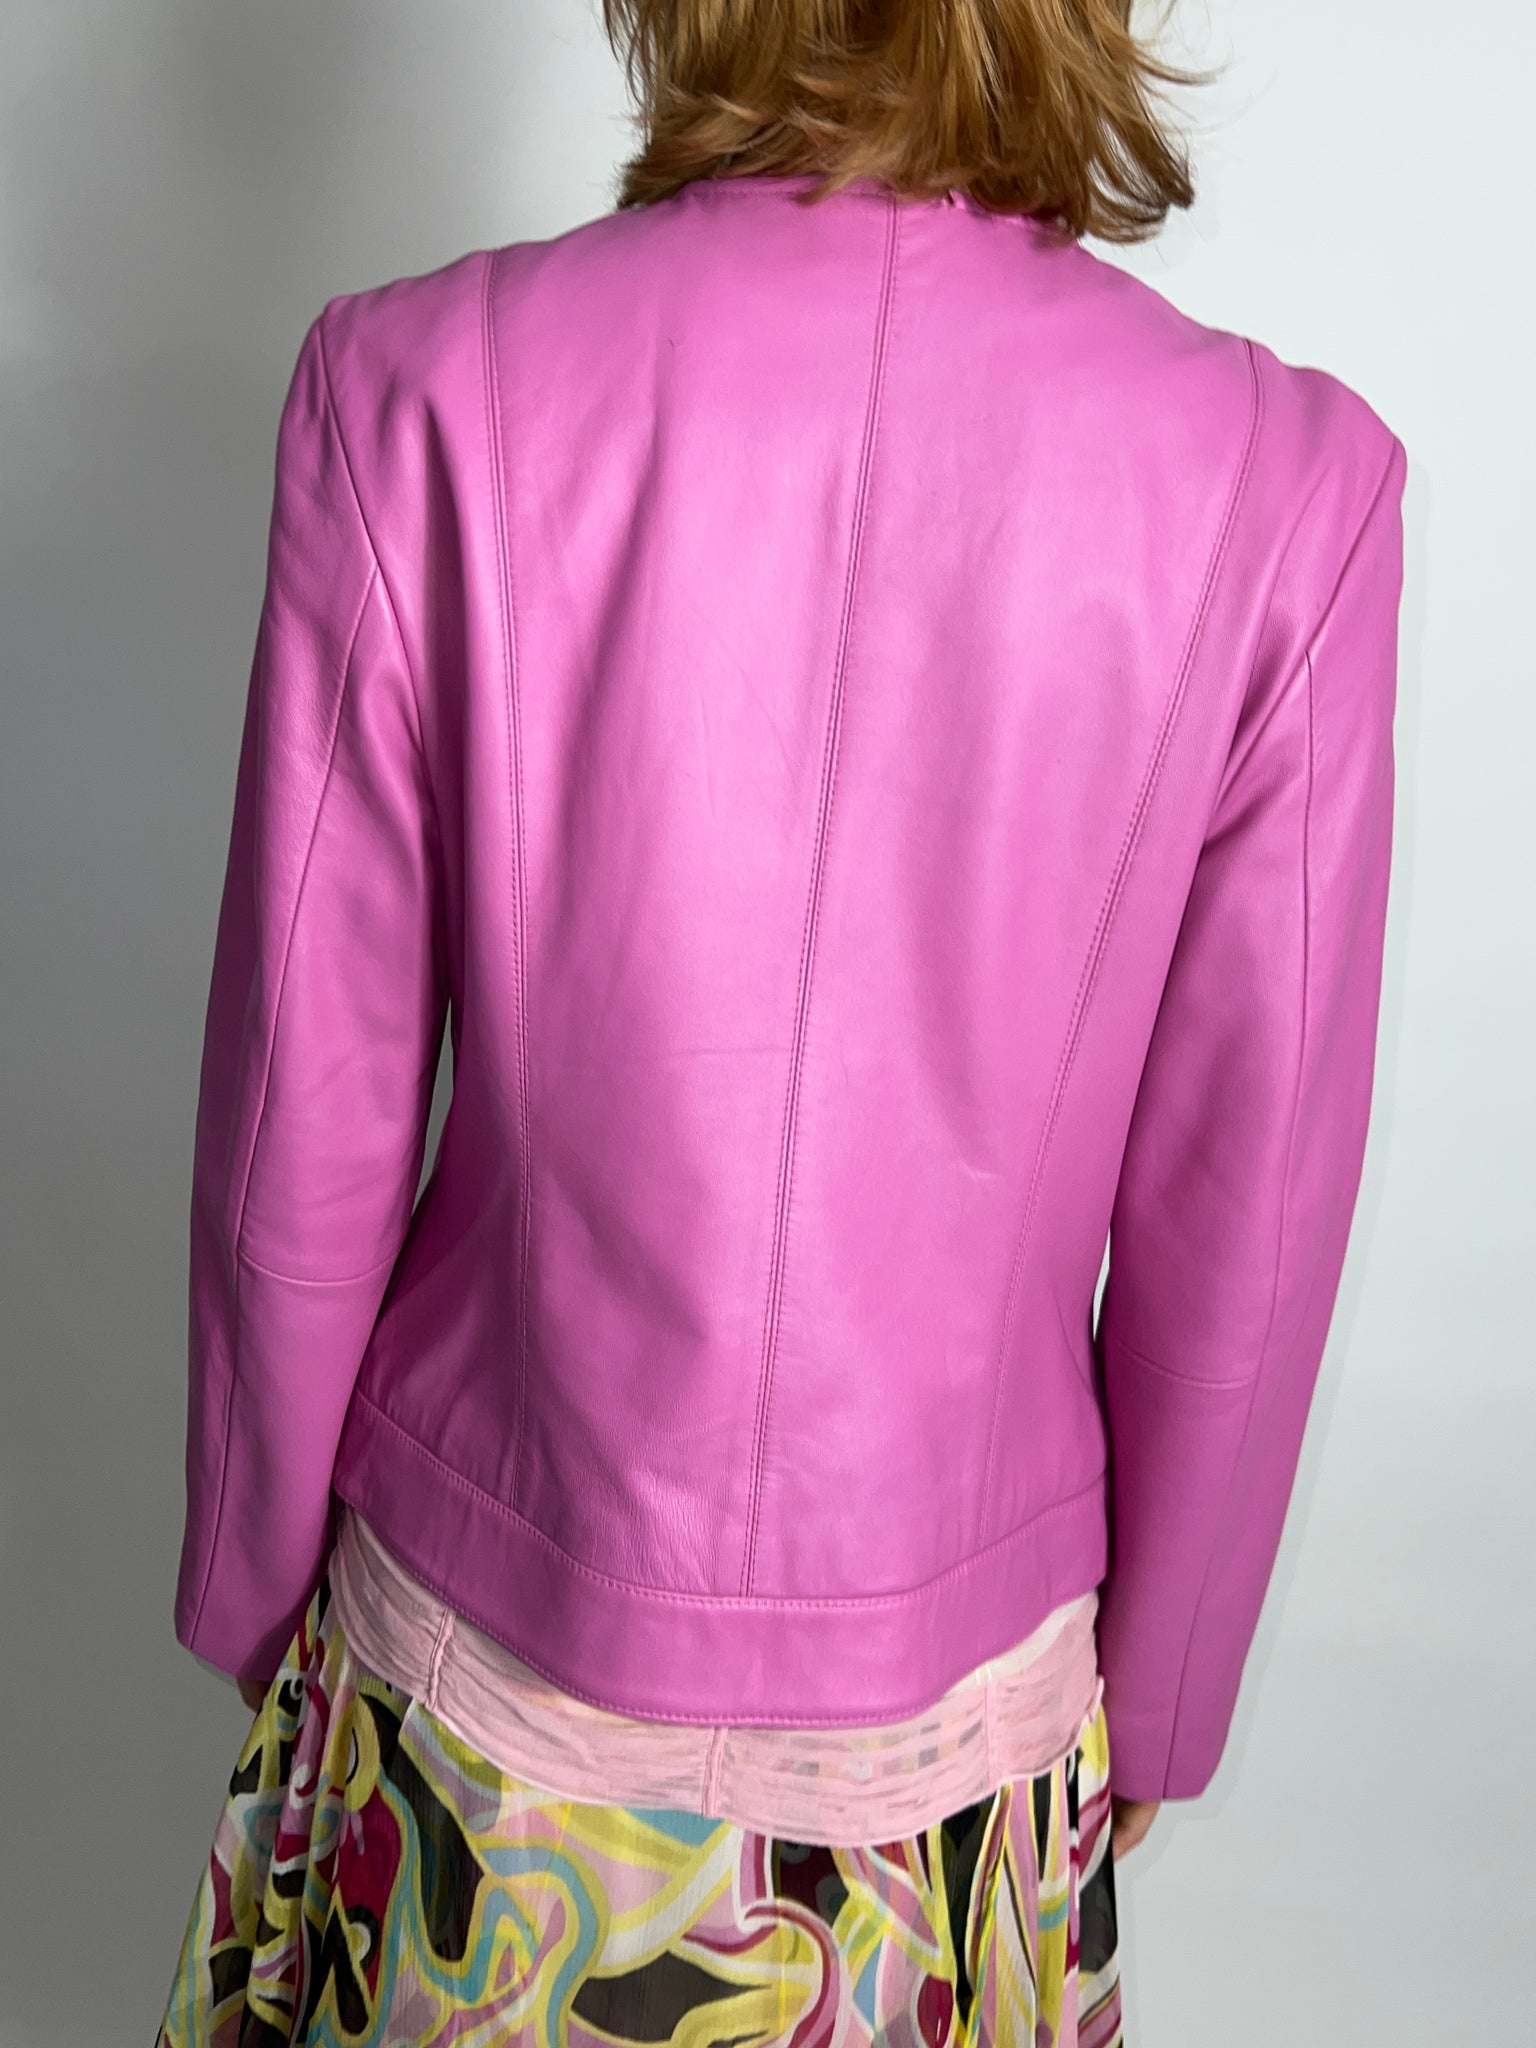 Pink Leather Biker Jacket